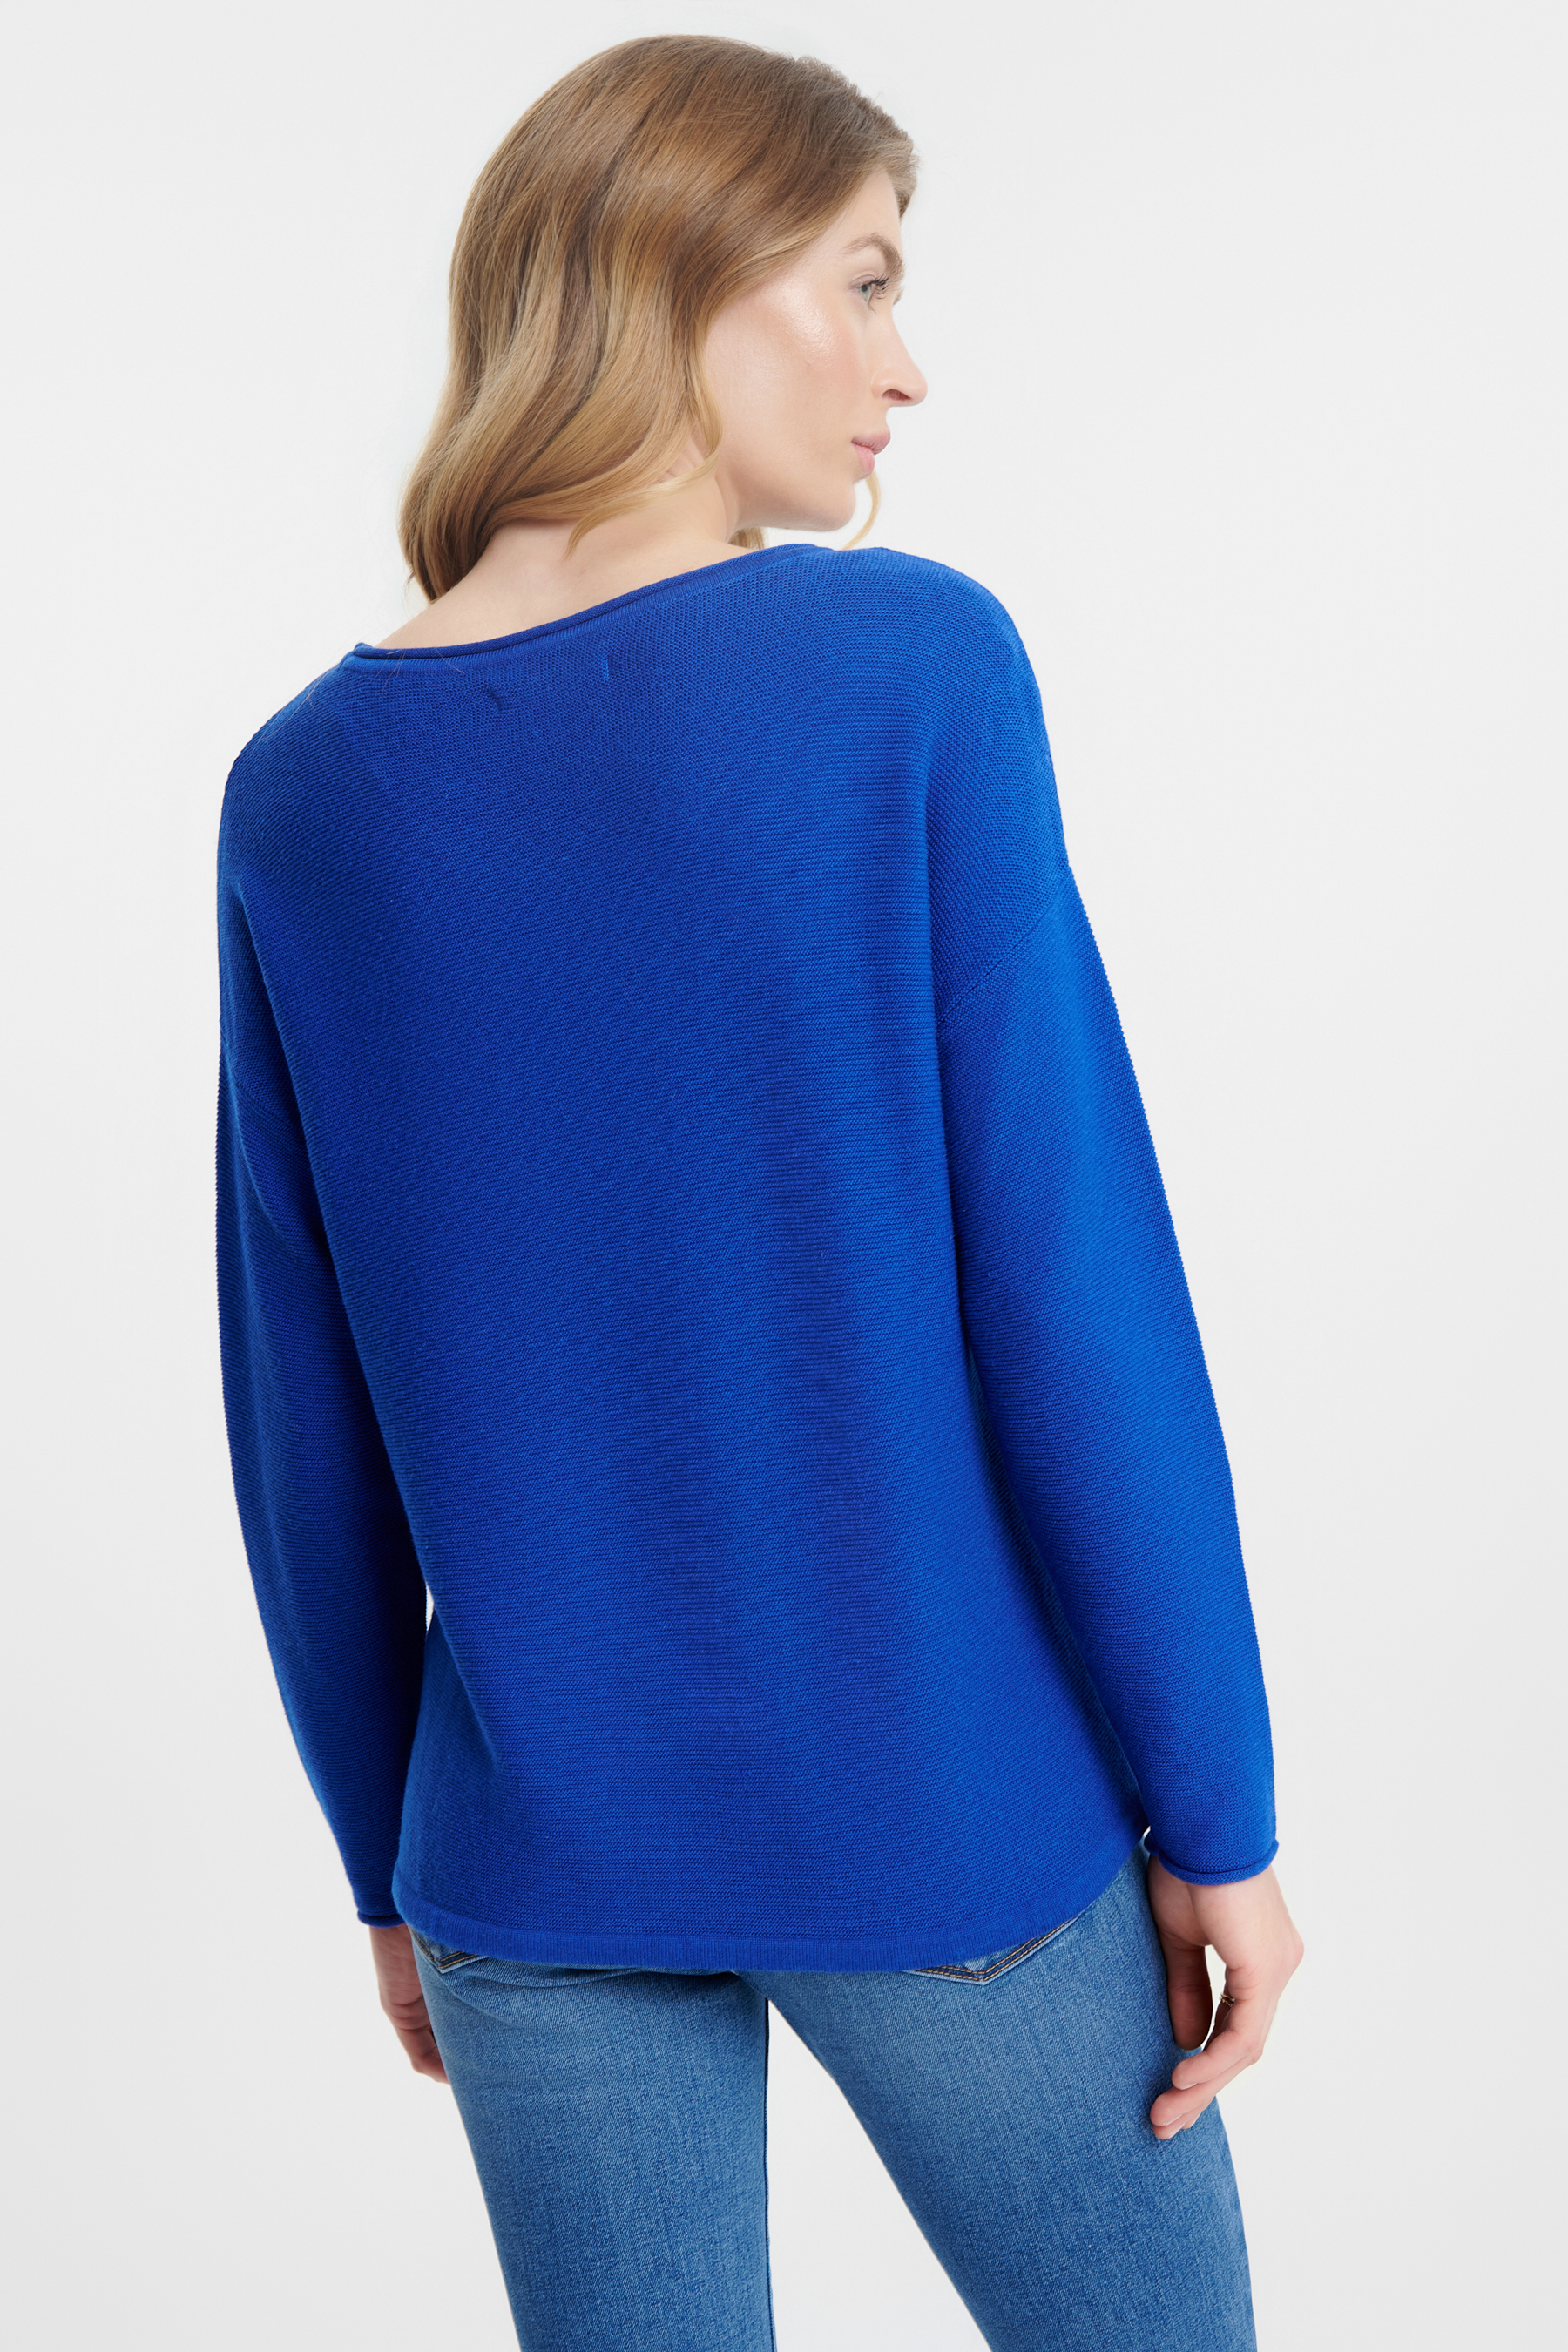 Kobaltowy sweter z troczkami u dołu